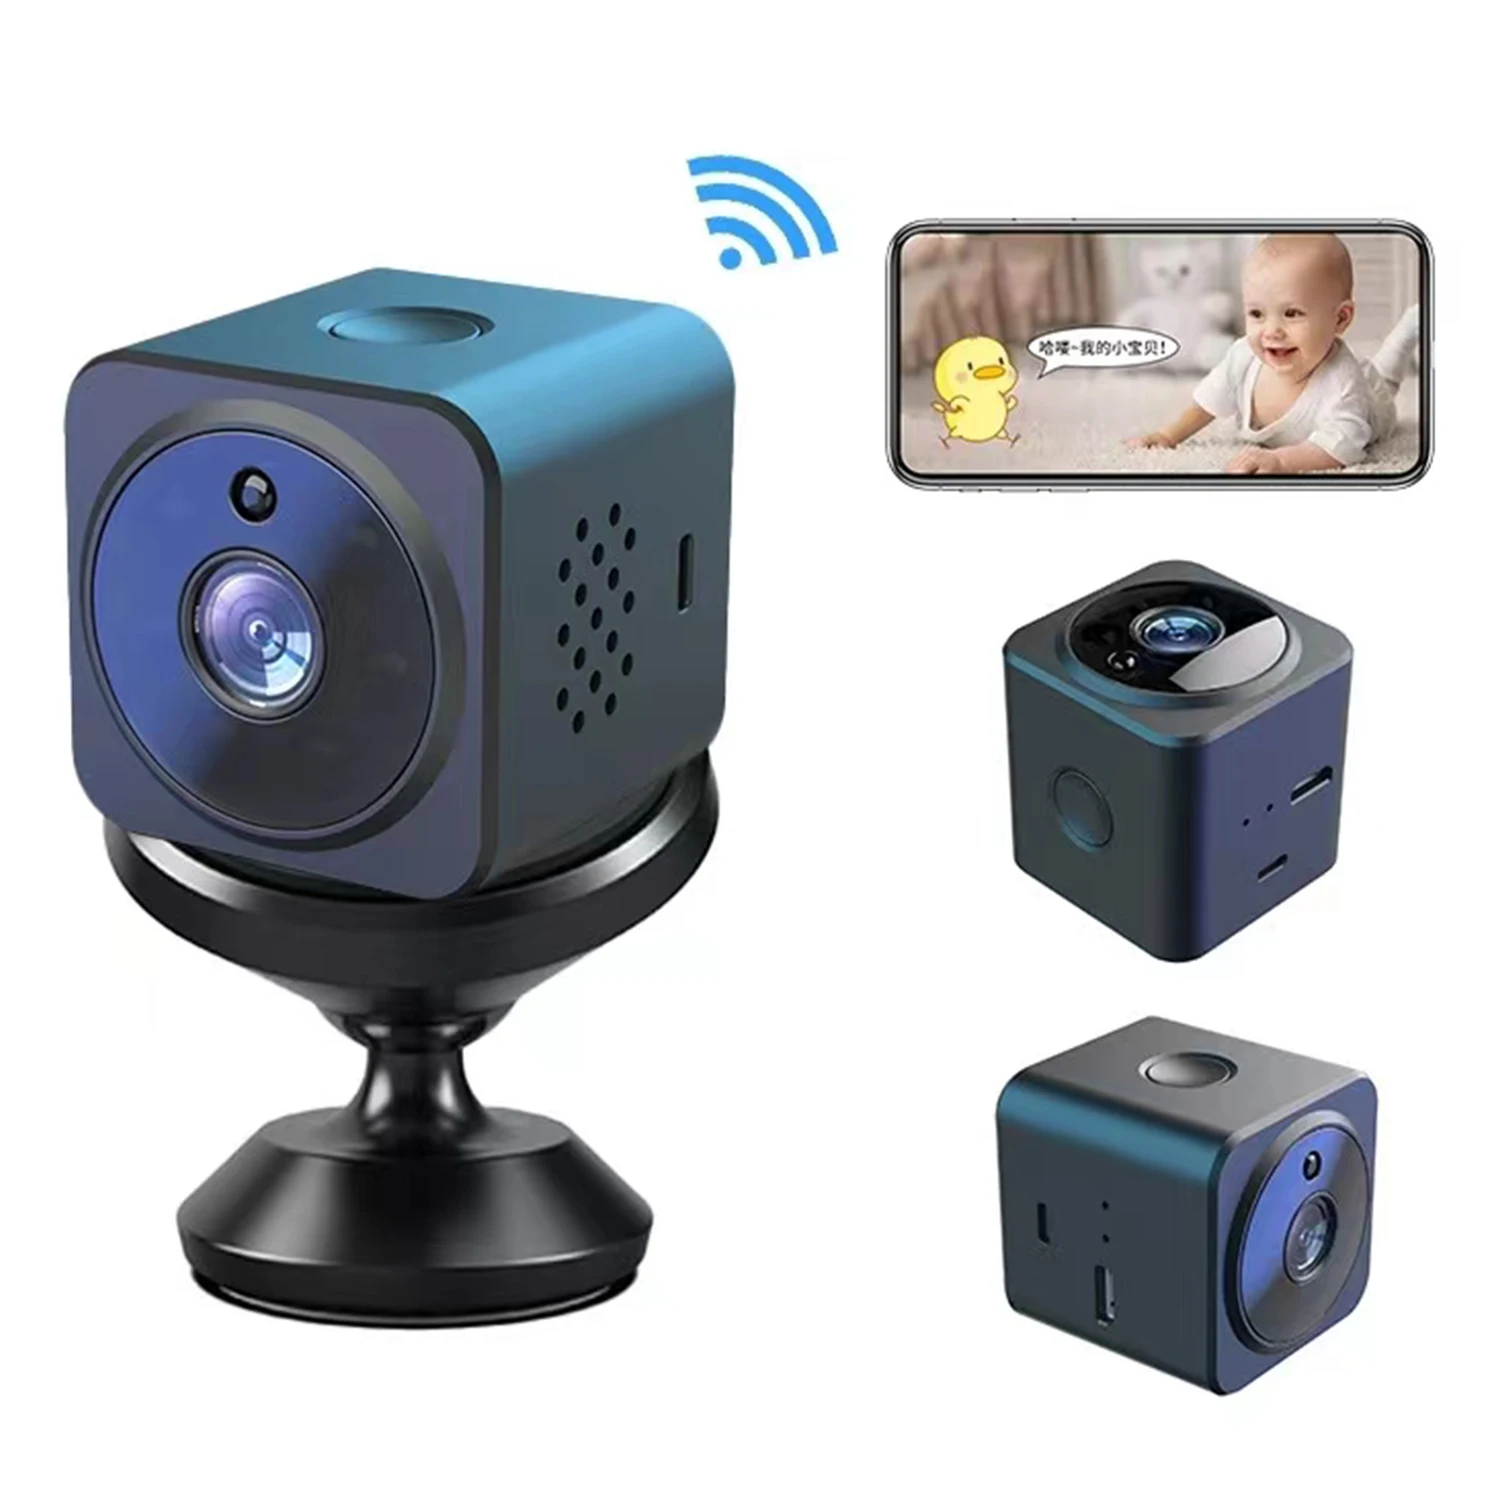 мрежова камера 1080p 2.4 G wifi дистанционно наблюдение двустранно детска помещение vioce security